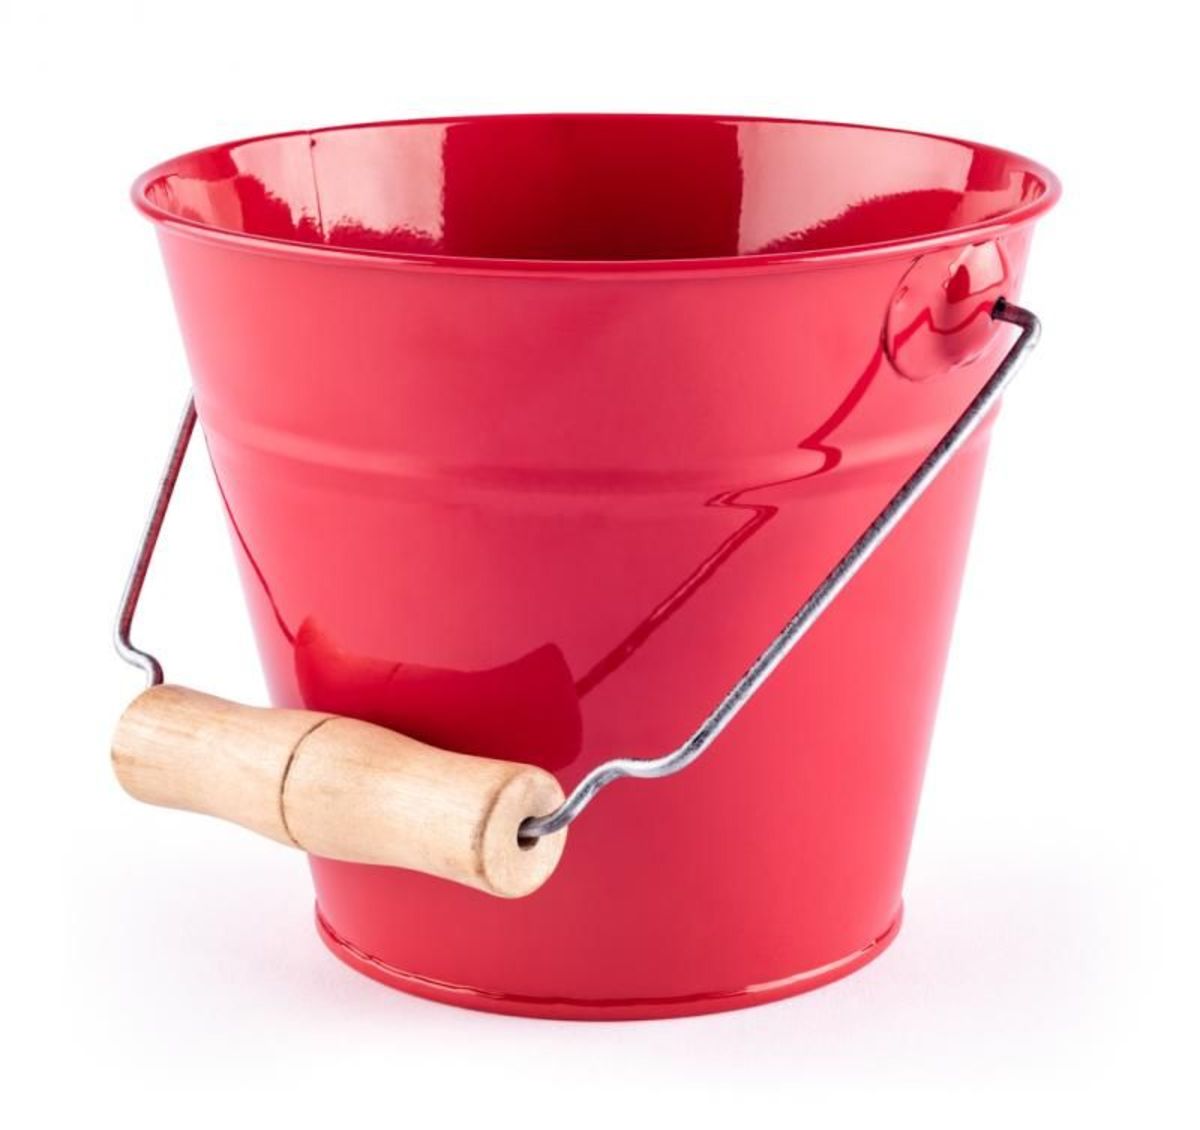 Garden bucket - red - banaby.co.uk